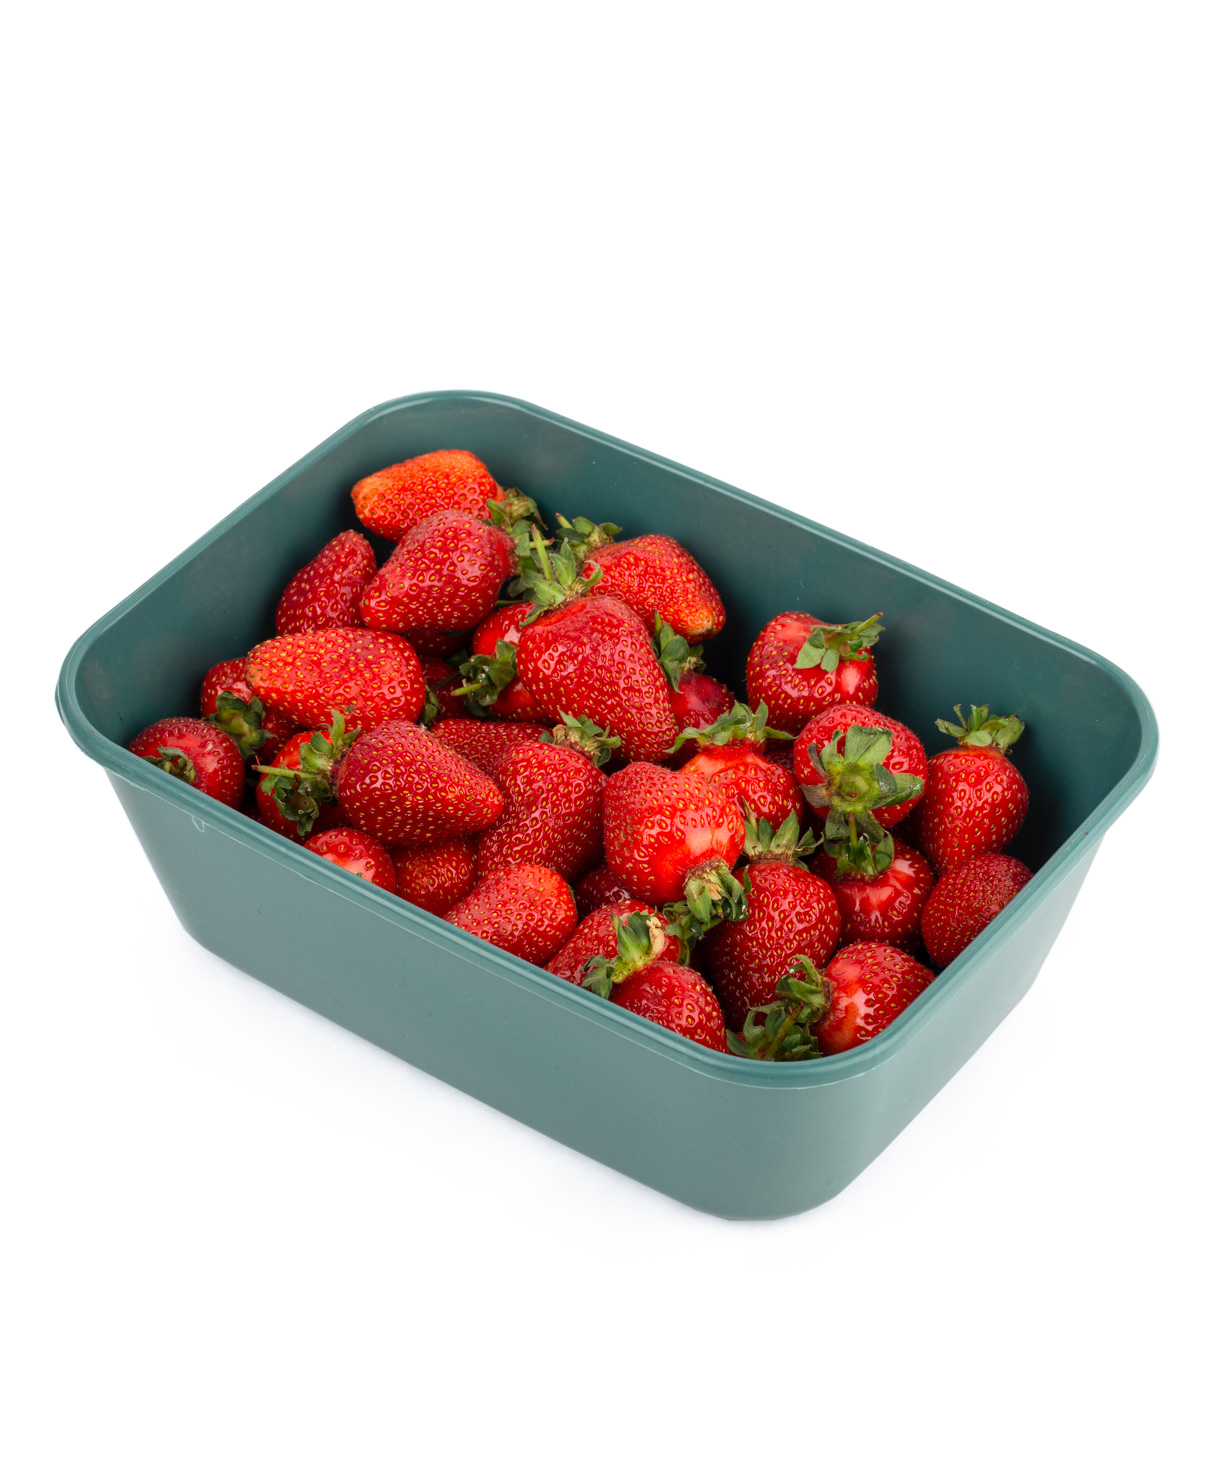 Strawberries 2 kg